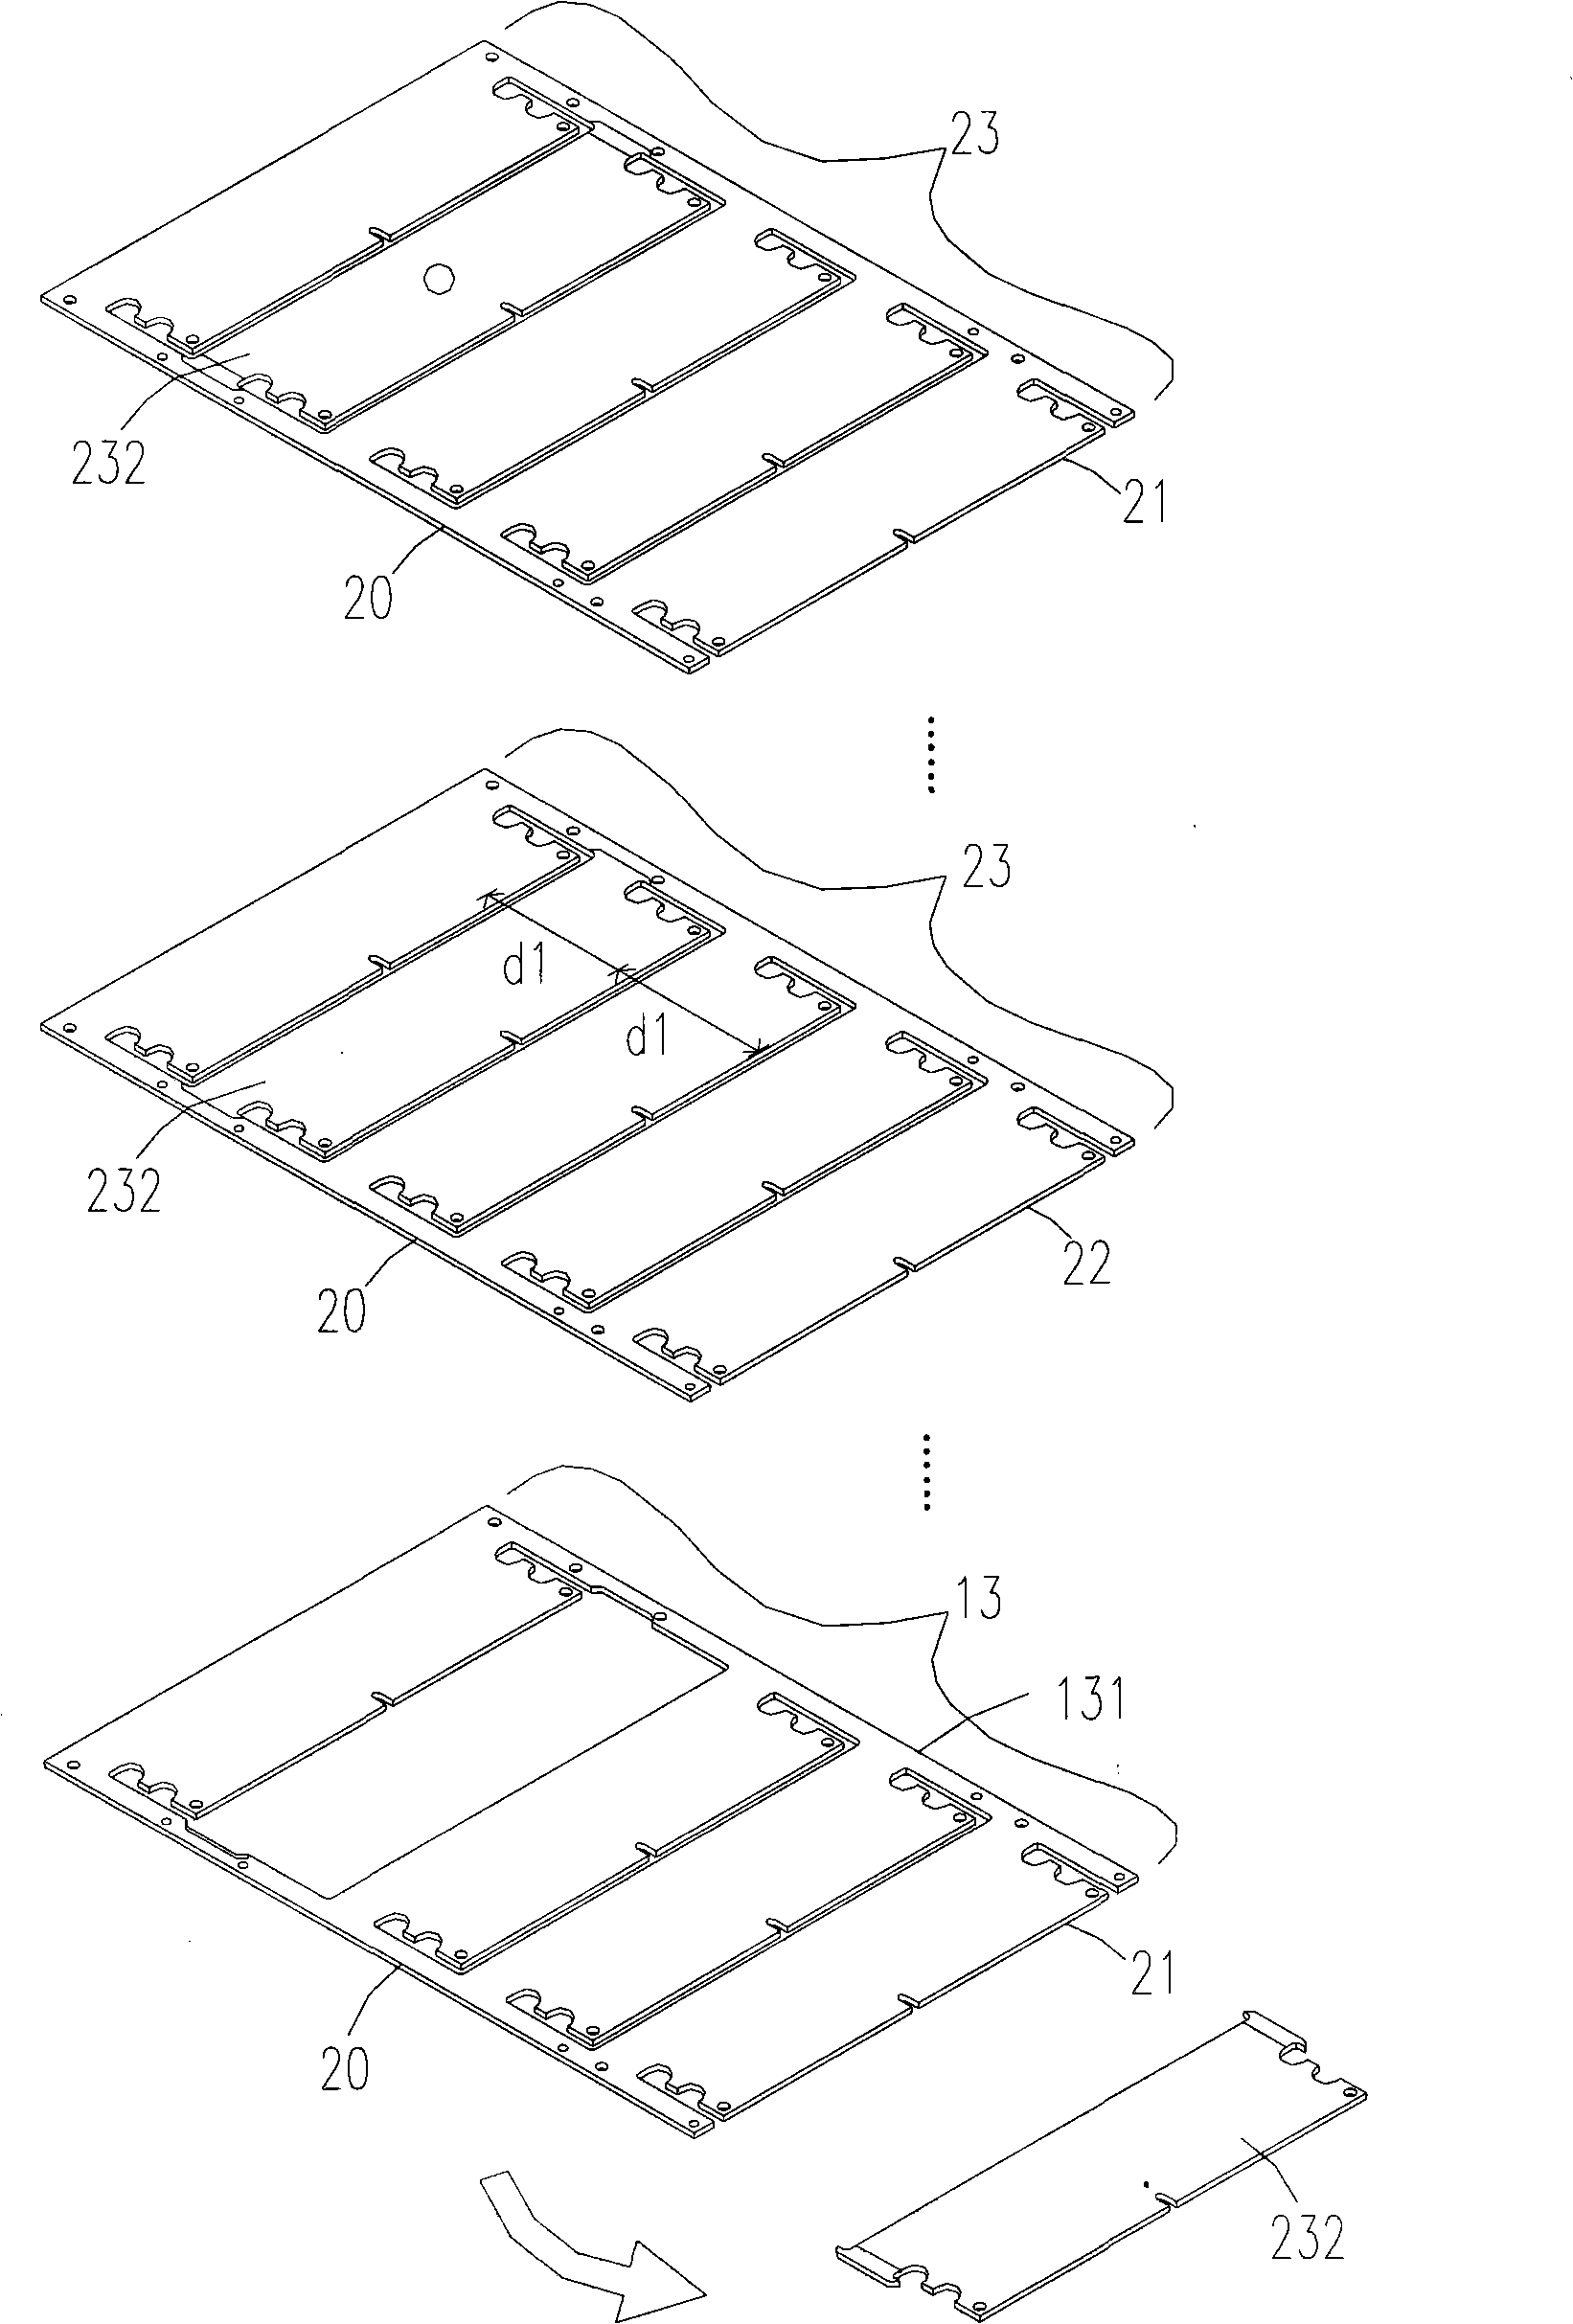 Method for preparing multi-sheet printed circuit board